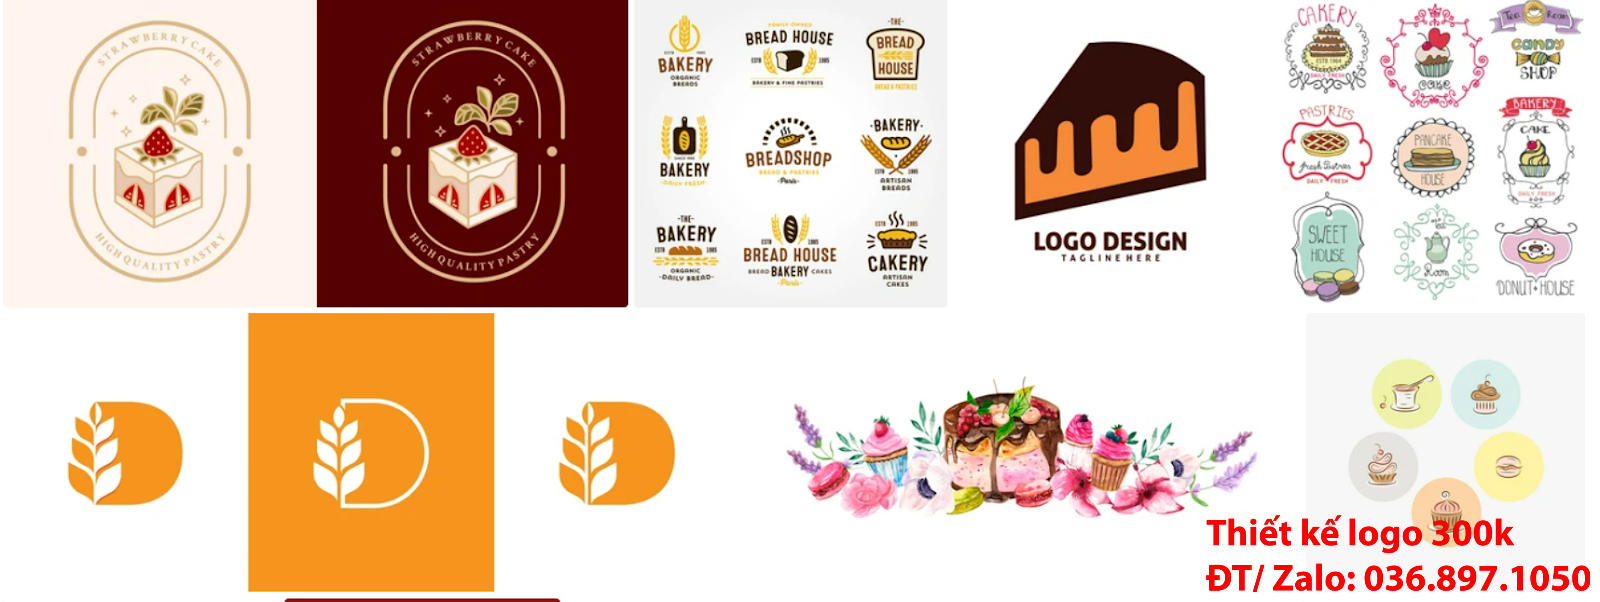 Công ty cung cấp mẫu thiết kế logo bánh kem chuyên nghiệp chất lượng tại Hà Nội